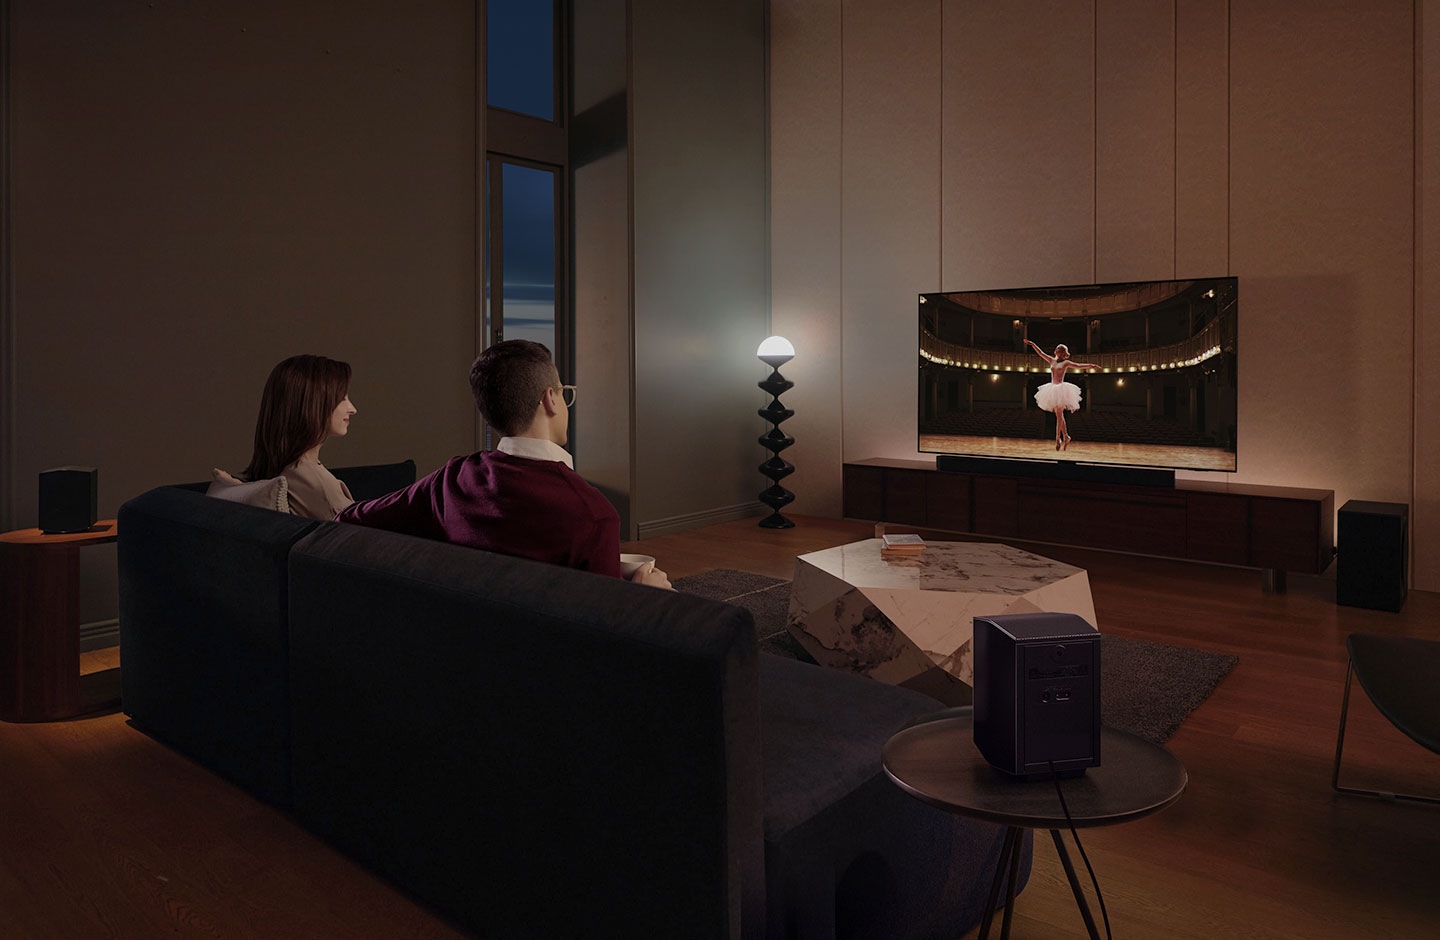 زوجان يستمتعان بمشاهدة فيلم السهرة في غرفة معيشتهما من خلال الصوت المحيطي الأشبه بصوت السينما الذي يتميز به جهاز الصوت من Samsung.